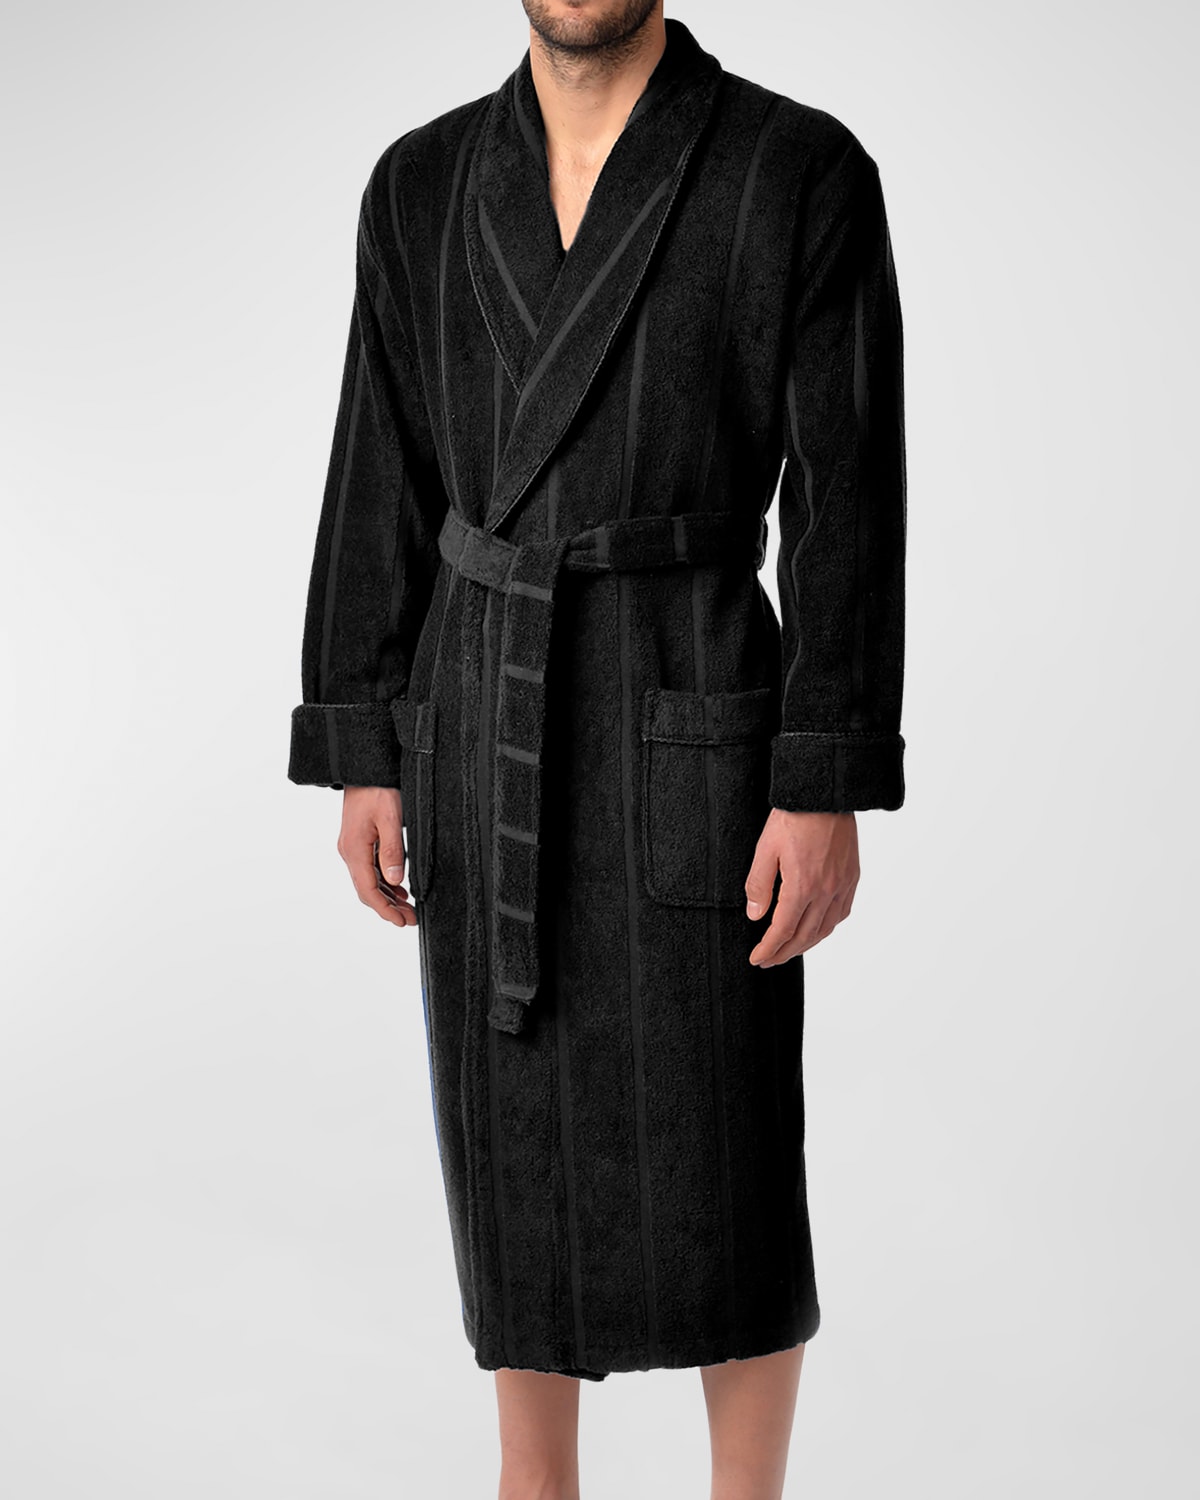 Majestic Men's Ultra Lux Jacquard Shawl Robe In Black